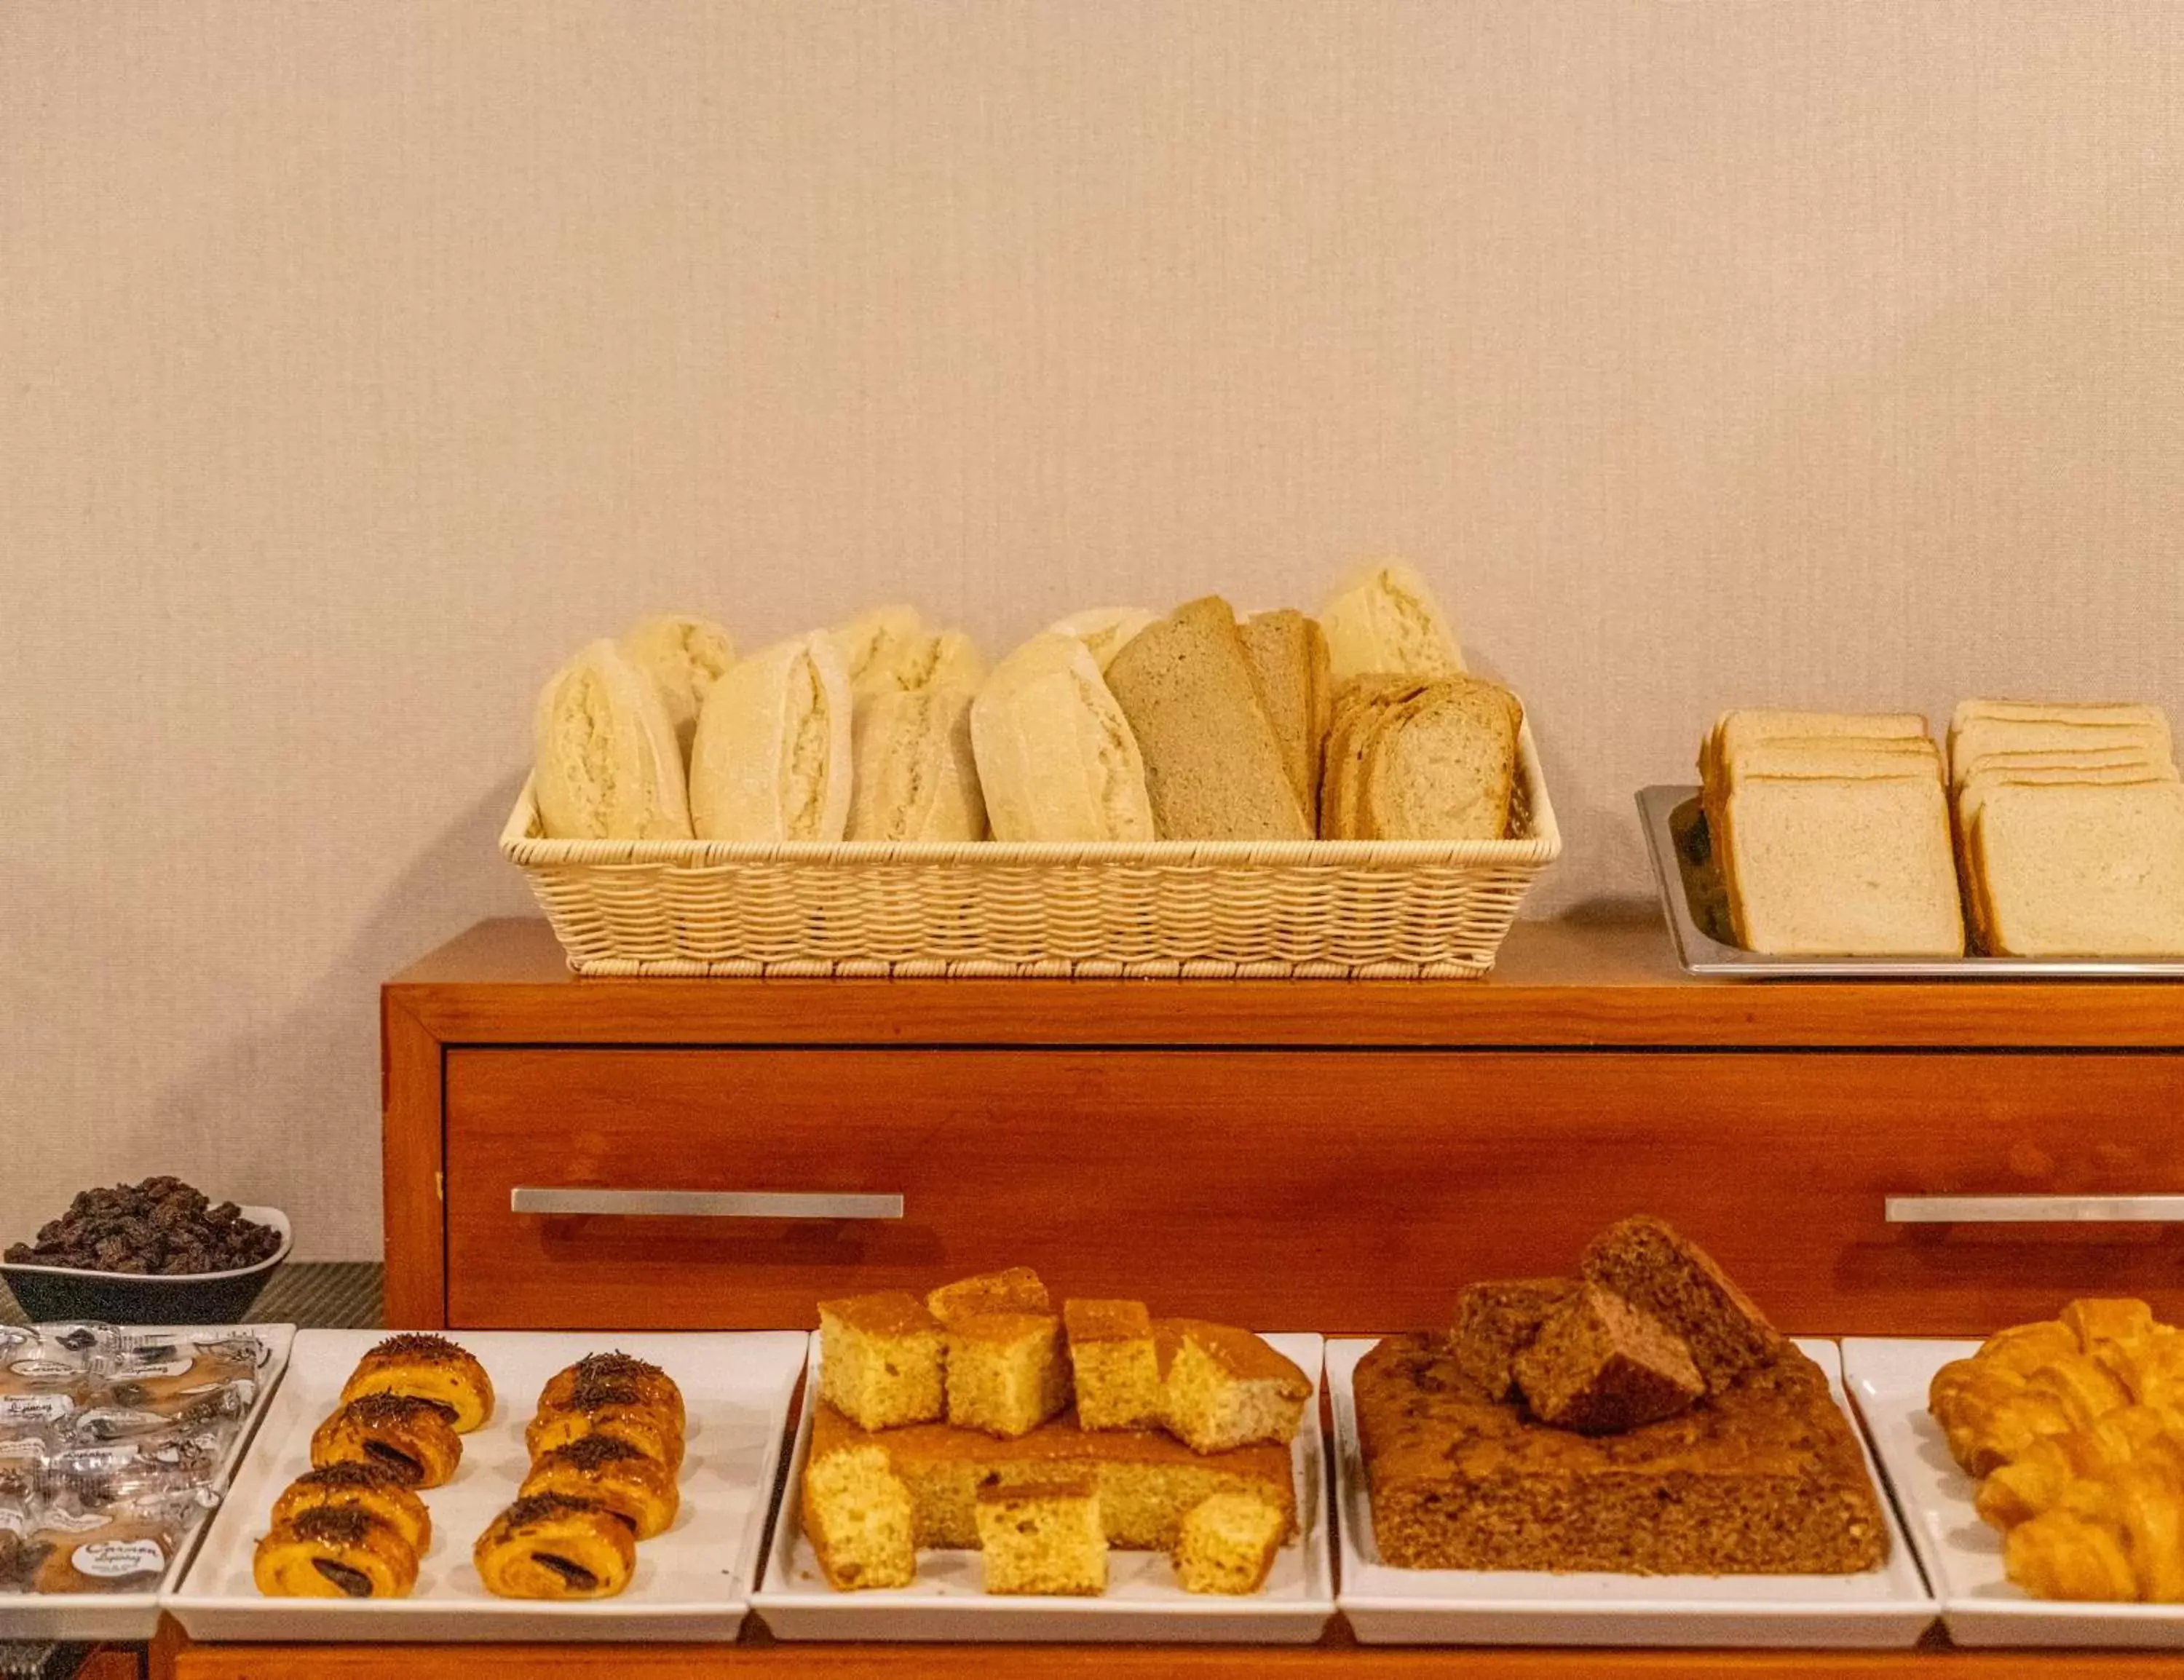 Buffet breakfast, Food in Gce Hoteles